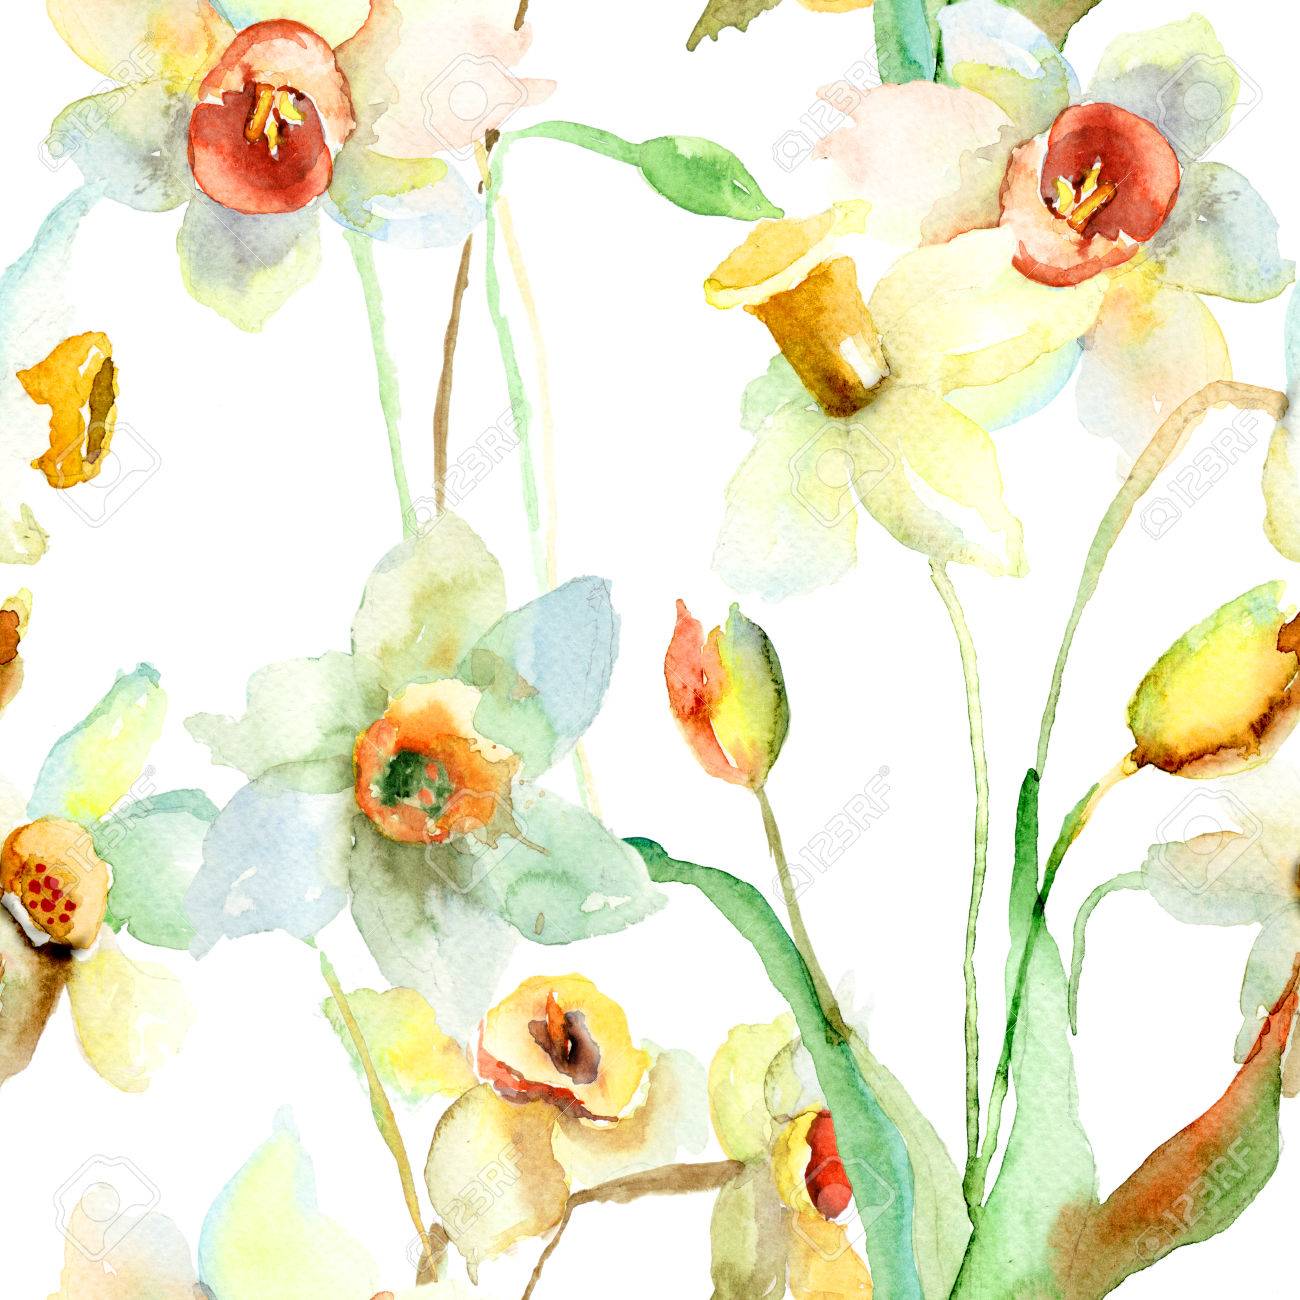 تصویر از افسانه نارسیس : نگاهی به نُت گل نرگس در عطرسازی از ابتدا تا امروز